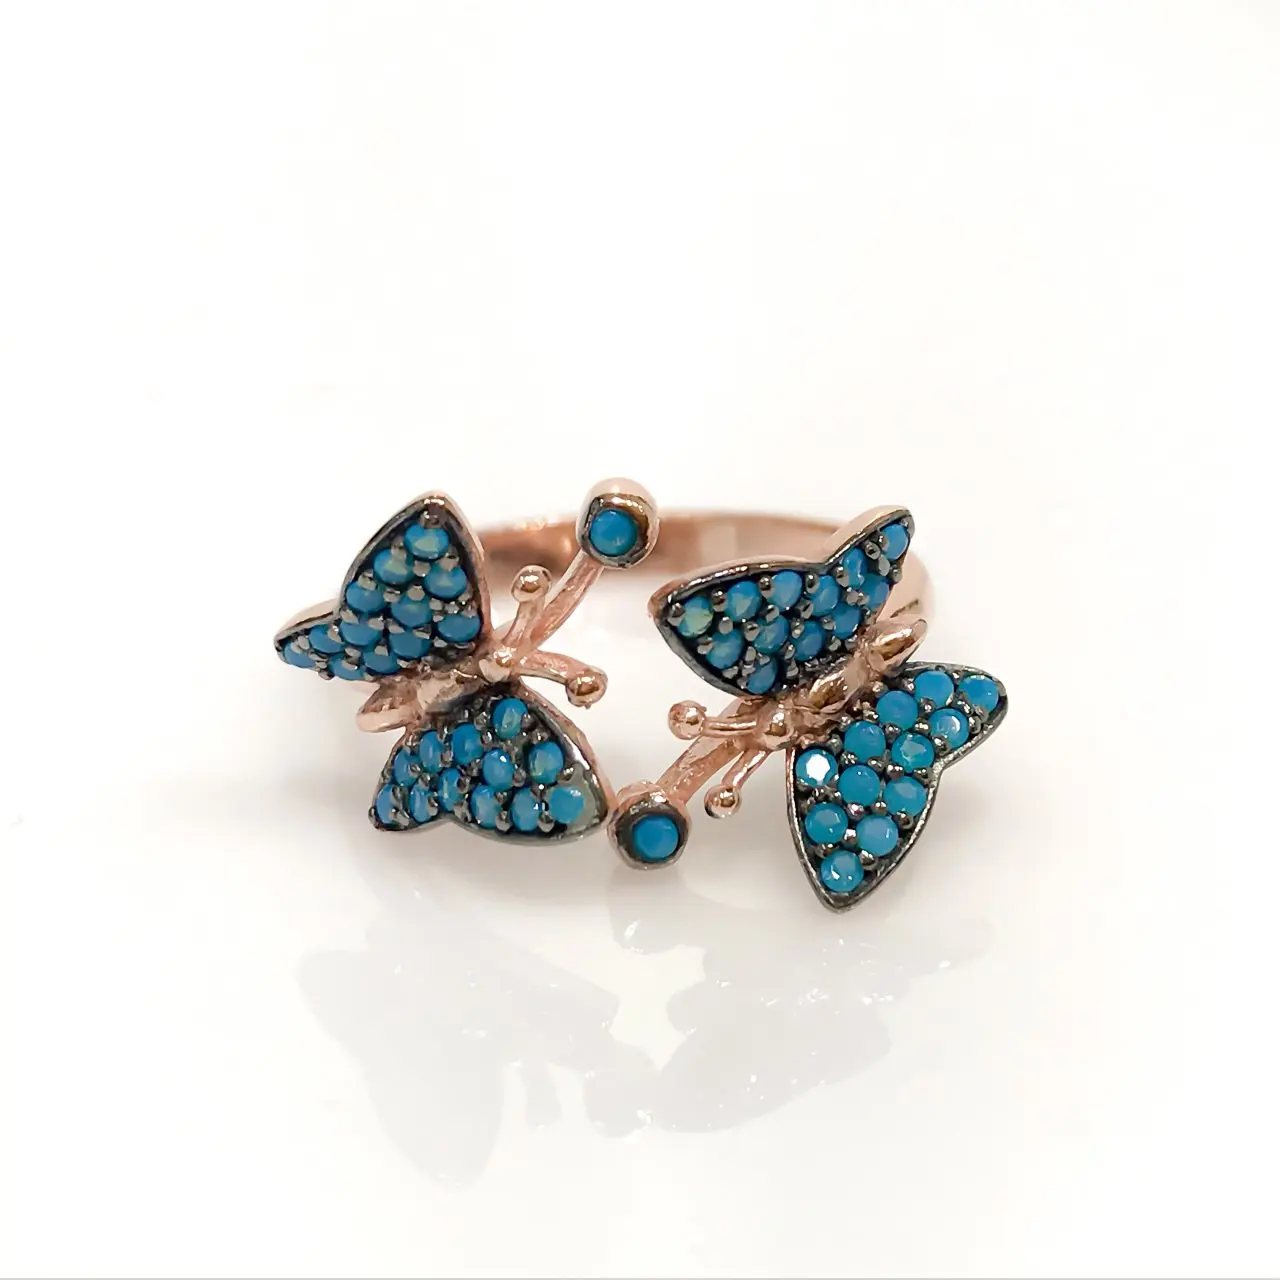 Трендовое серебряное кольцо с двумя бабочками и голубым крошечным бирюзовым камнем от AliExpress RU&CIS NEW